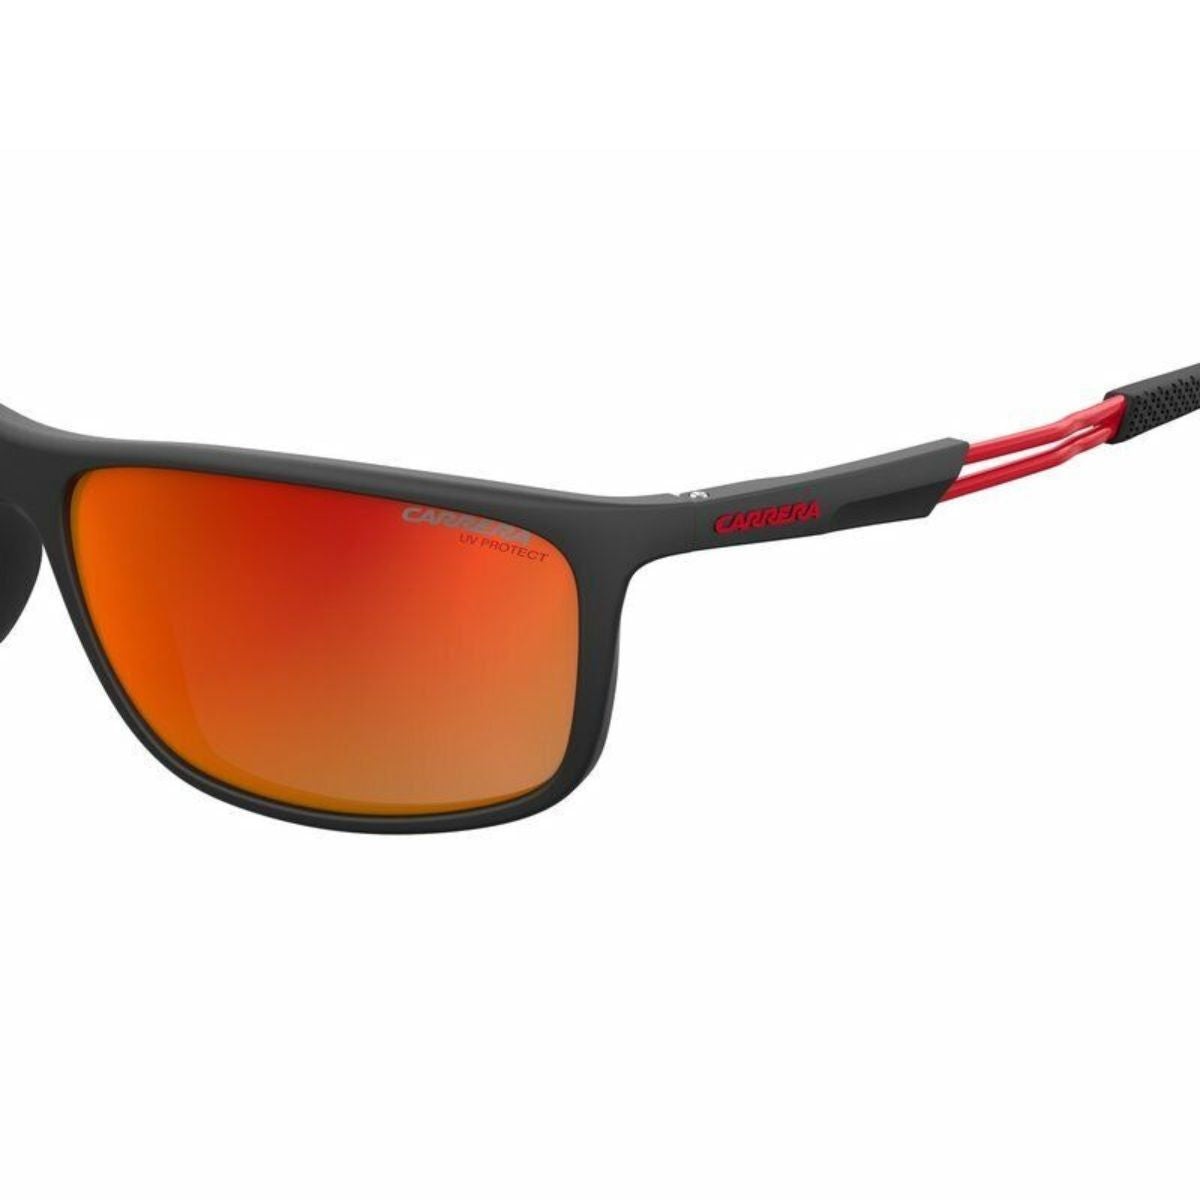 "Buy Carrera Sunglasses For Mens At Optorium"